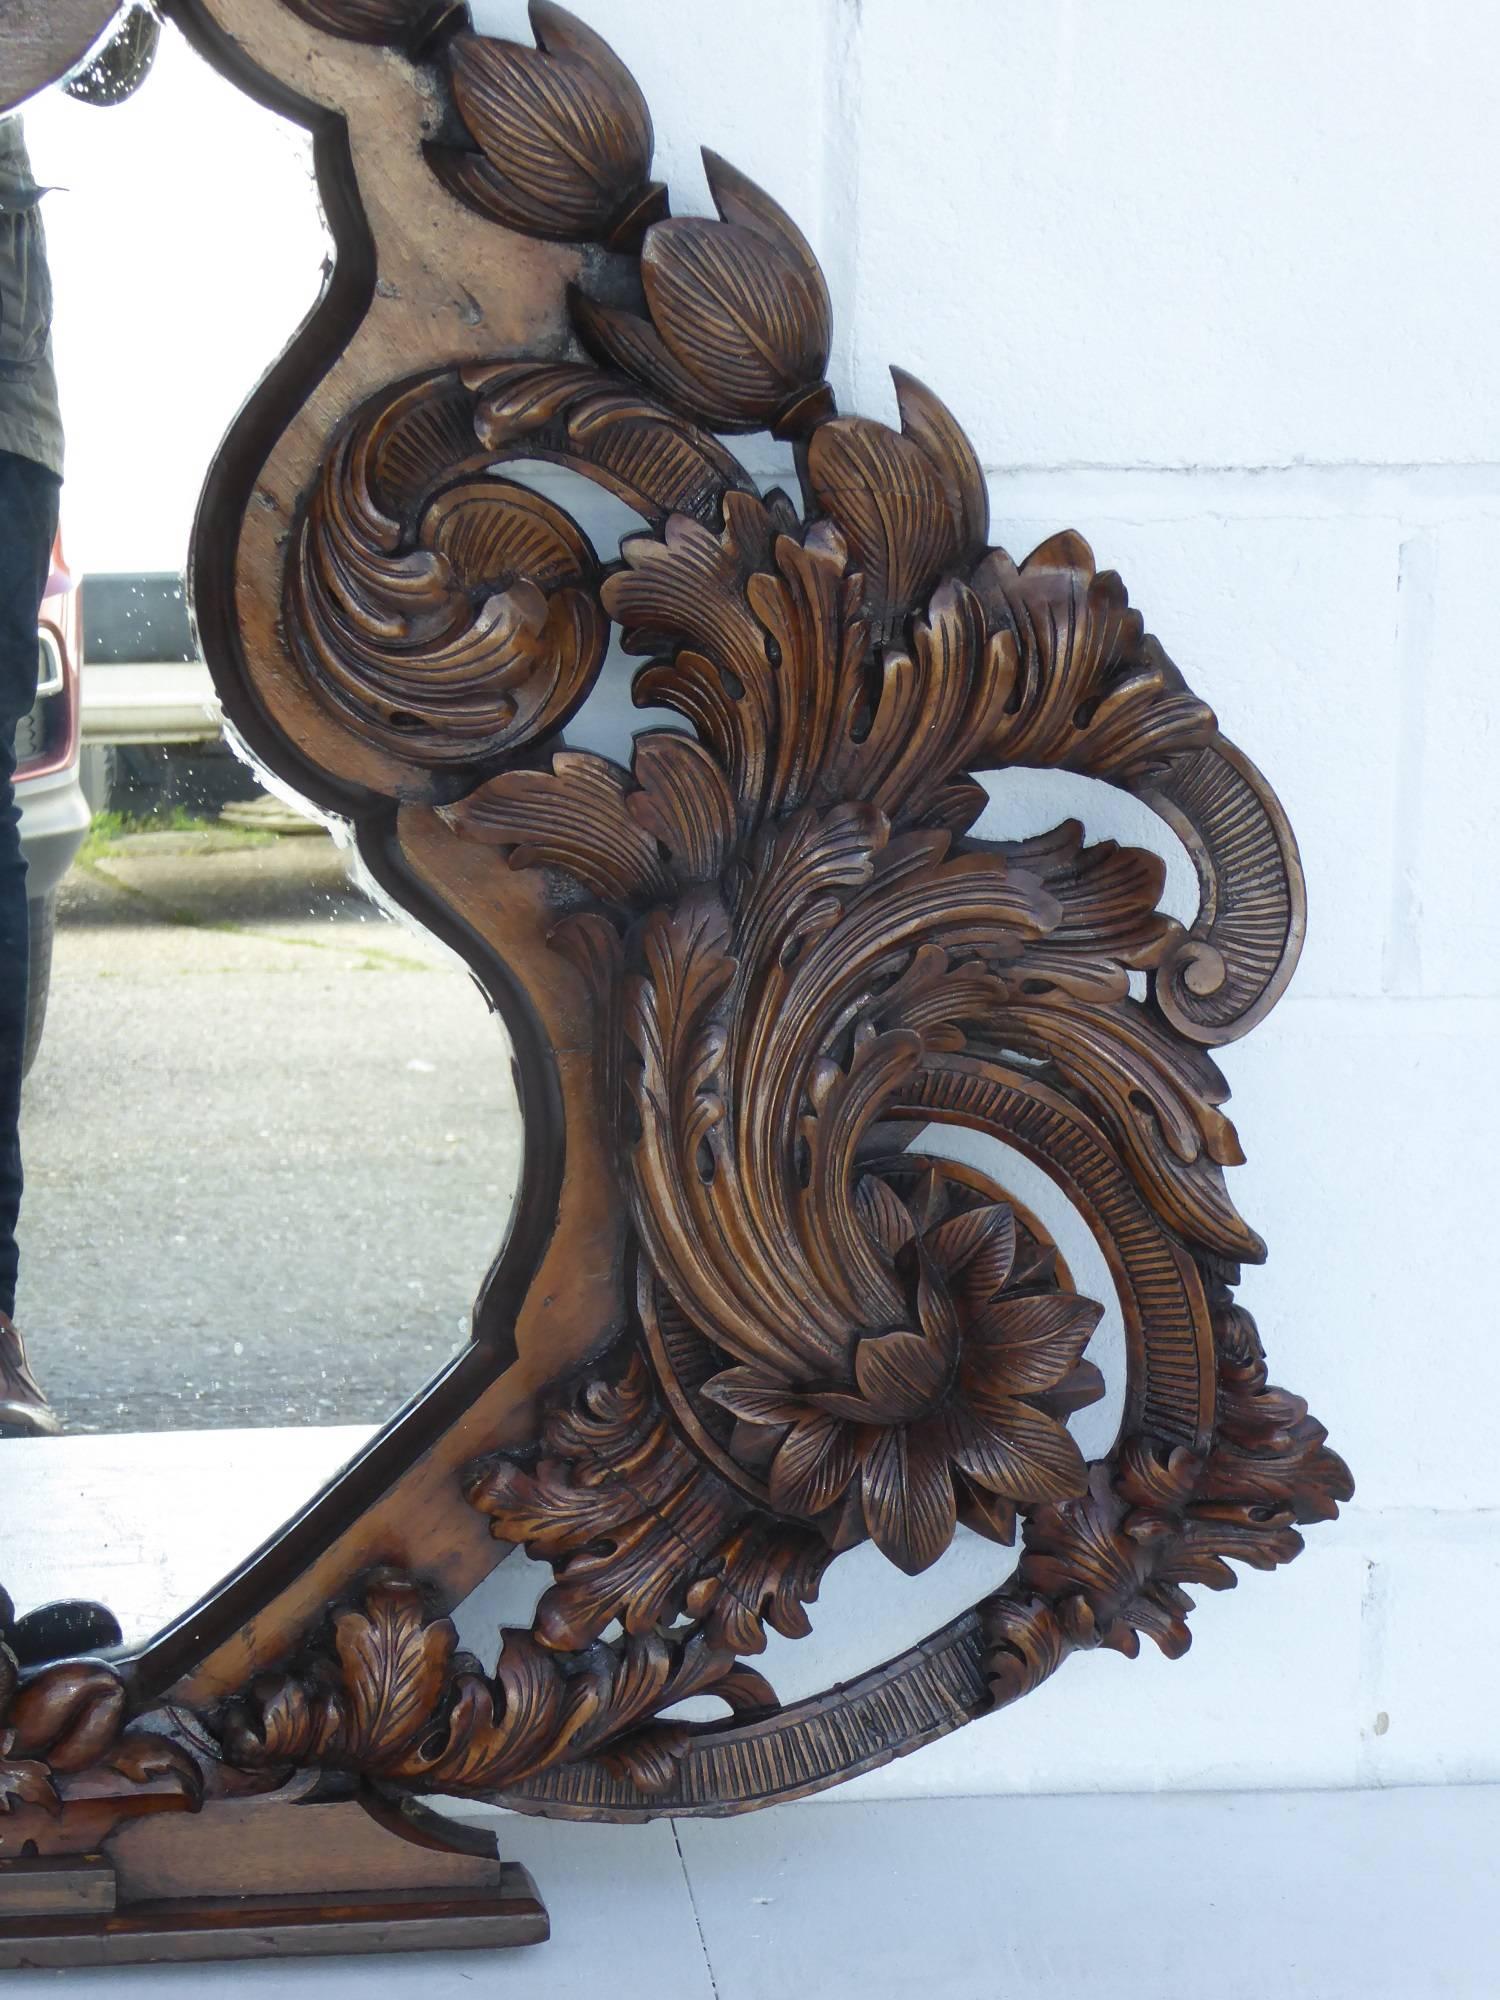 Zum Verkauf steht ein hochwertiger, stark geschnitzter Spiegel aus dem 19. Jahrhundert. Mit einem geschnitzten Maskenmotiv auf der Oberseite, hat der Spiegel unglaublich kunstvolle florale Schnitzereien auf beiden Seiten, die einen geformten Spiegel